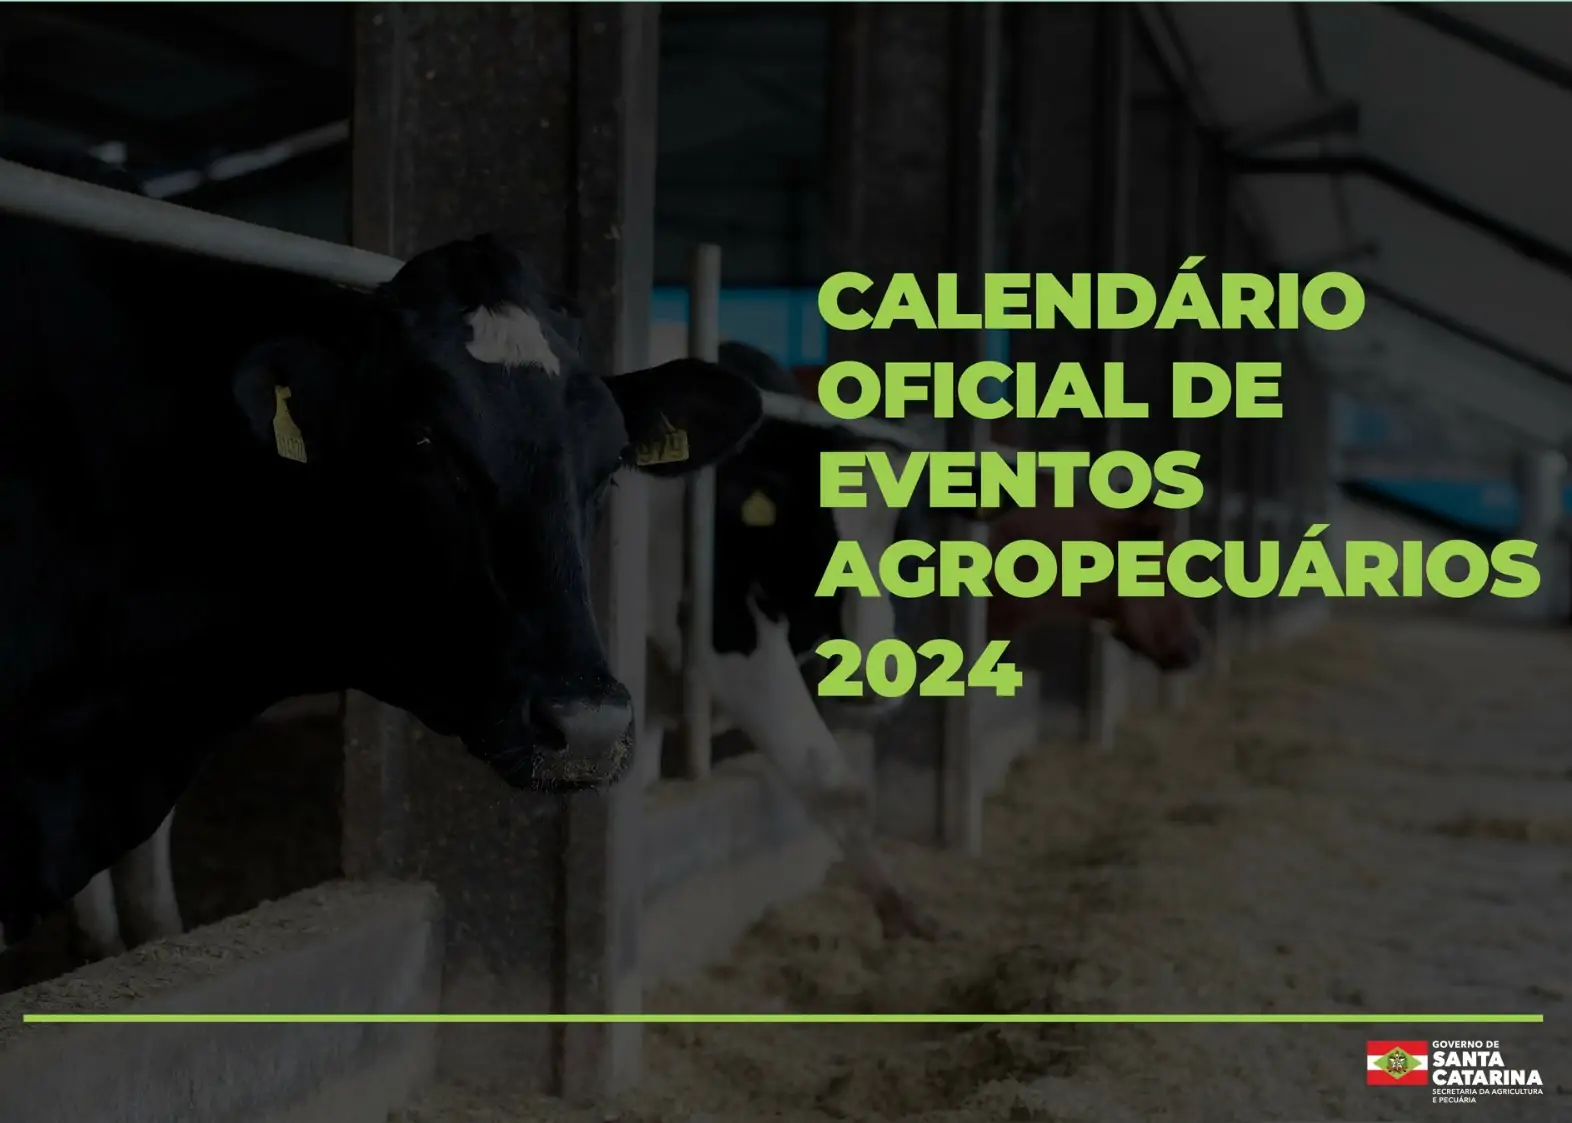 Mais de 400 eventos agropecuários estão no calendário oficial de 2024 em Santa Catarina 1